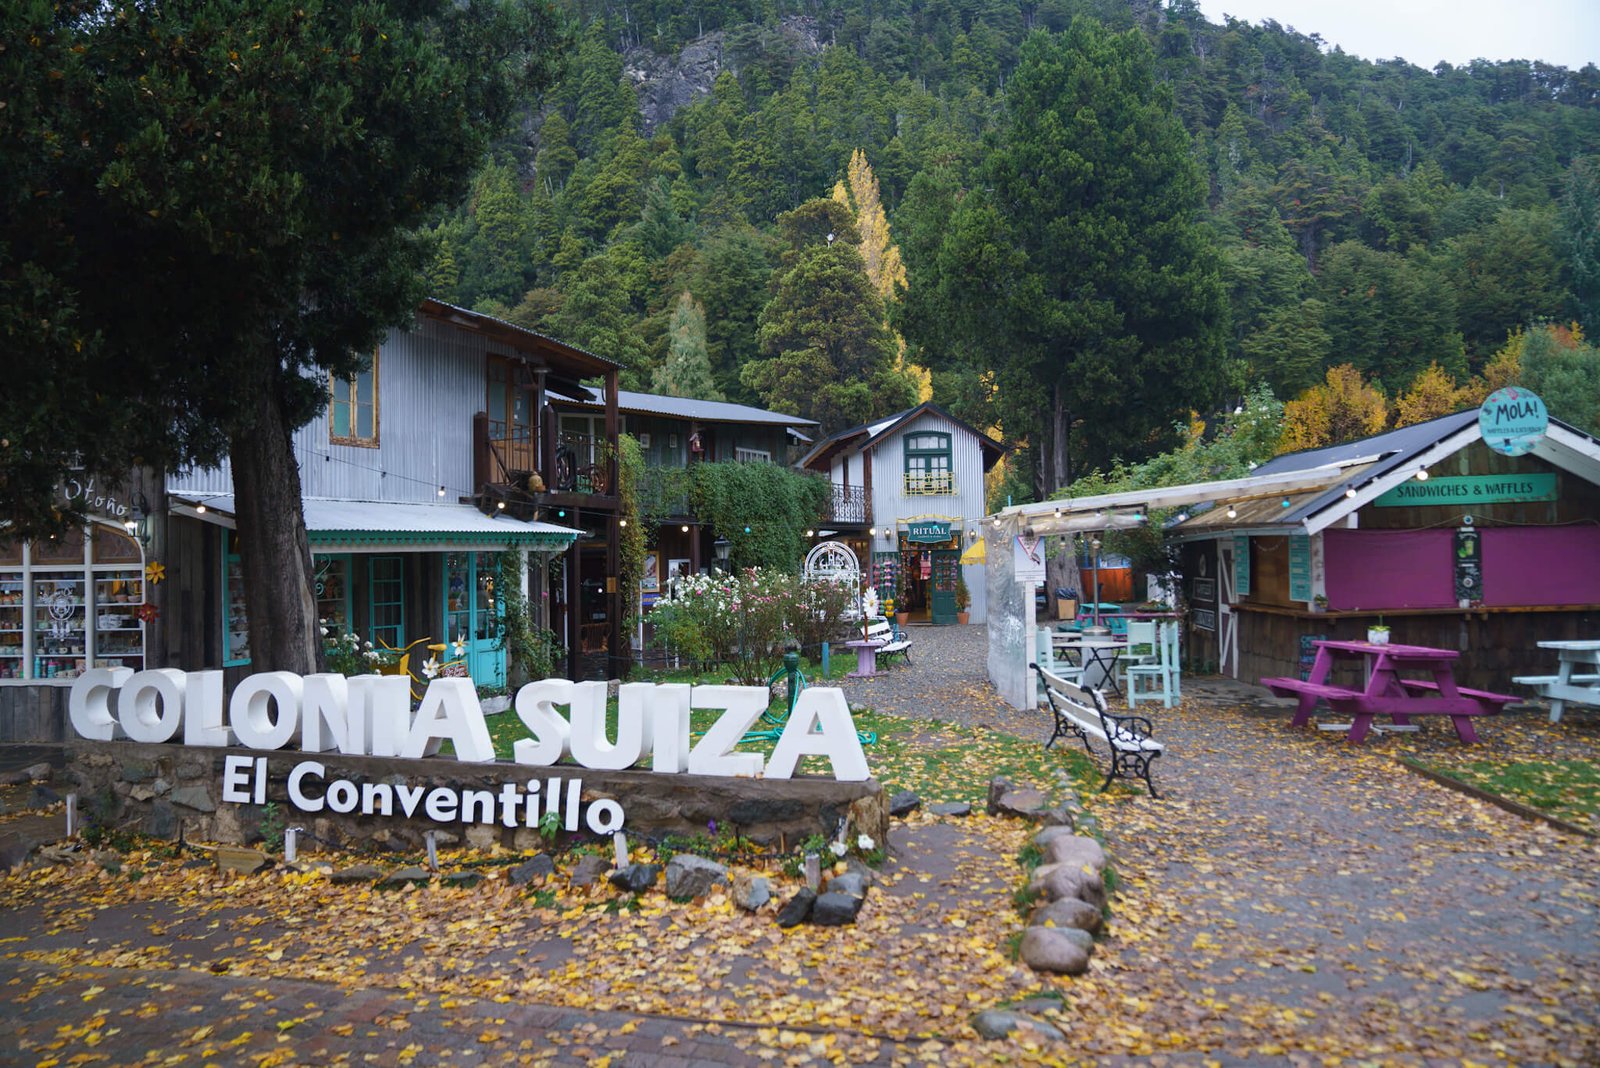 Colonia Suiza, Bariloche in Argentina